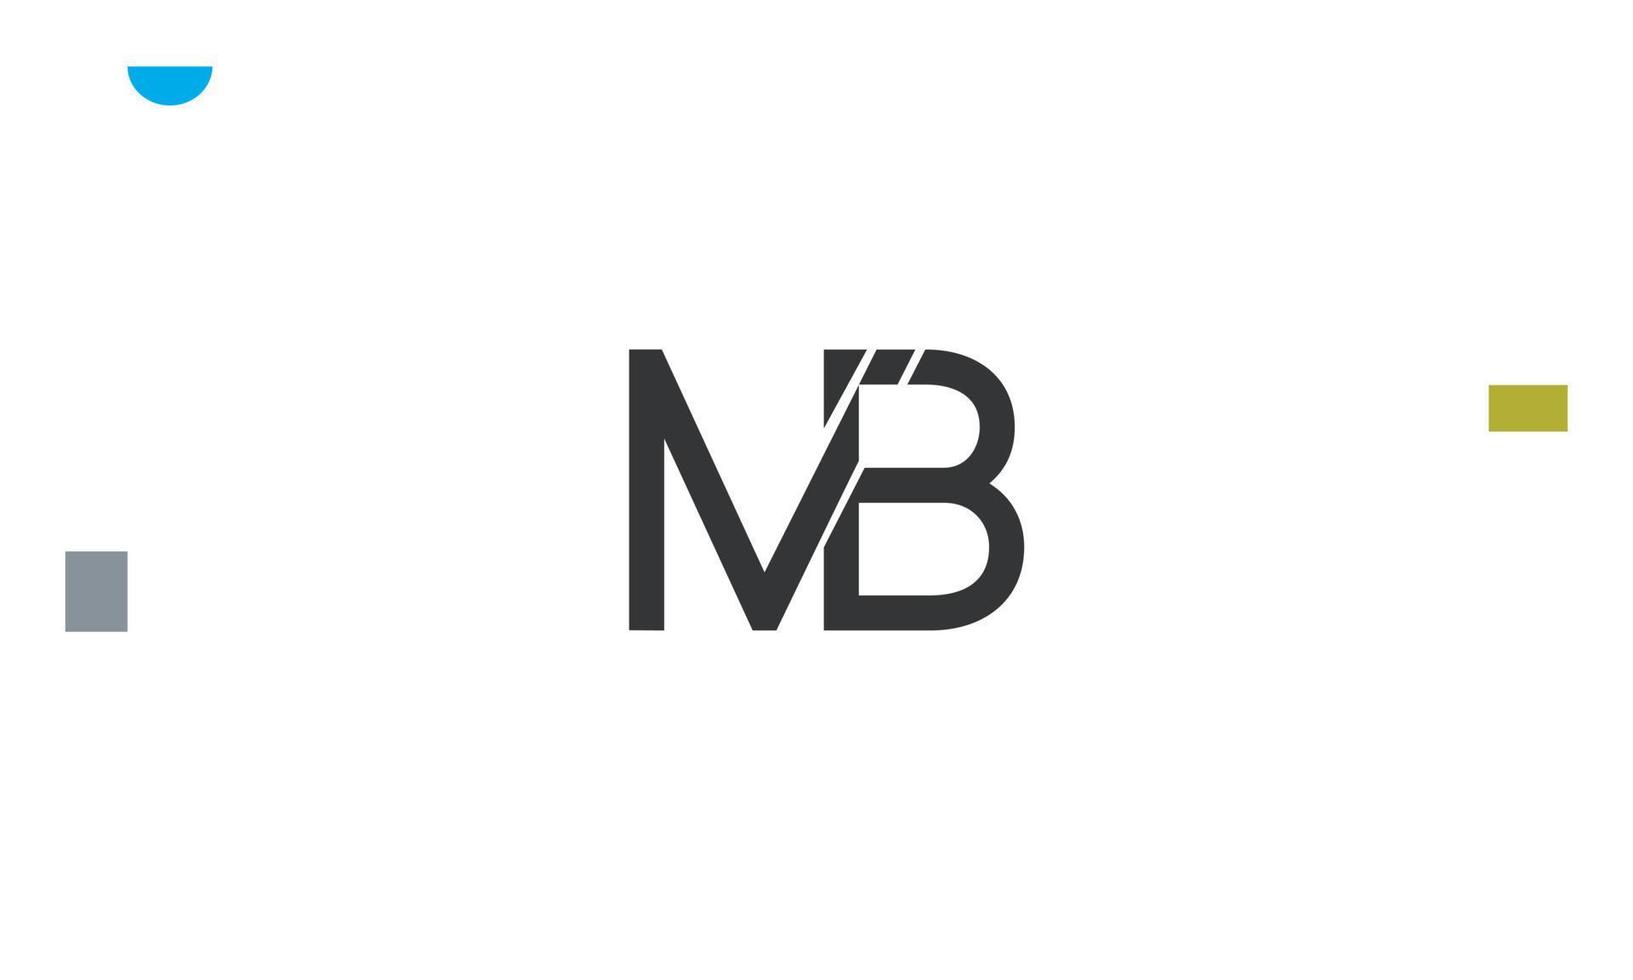 alfabeto lettere iniziali monogramma logo mb, bm, m e b vettore